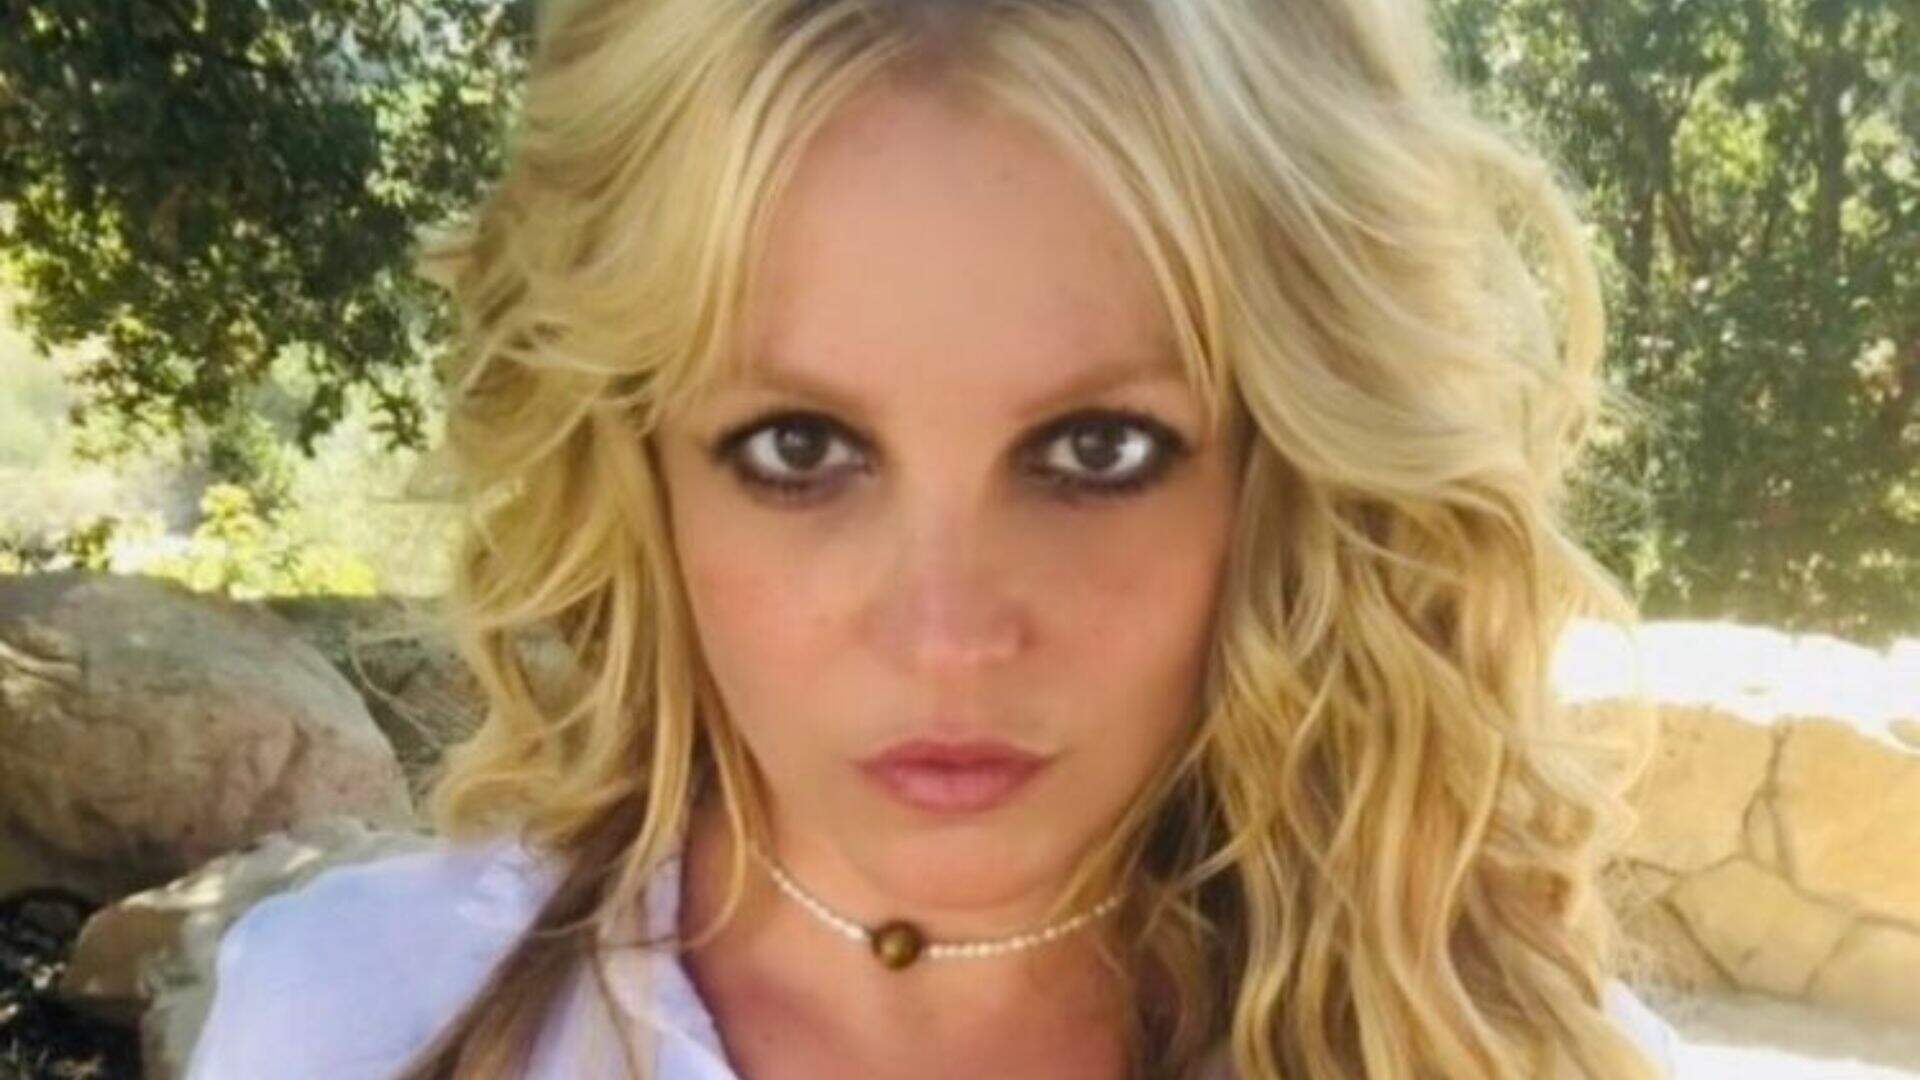 Britney Spears publica vídeo considerado polêmico, deixa fãs assustados e esclarece “brincadeira” após repercussão negativa - Metropolitana FM